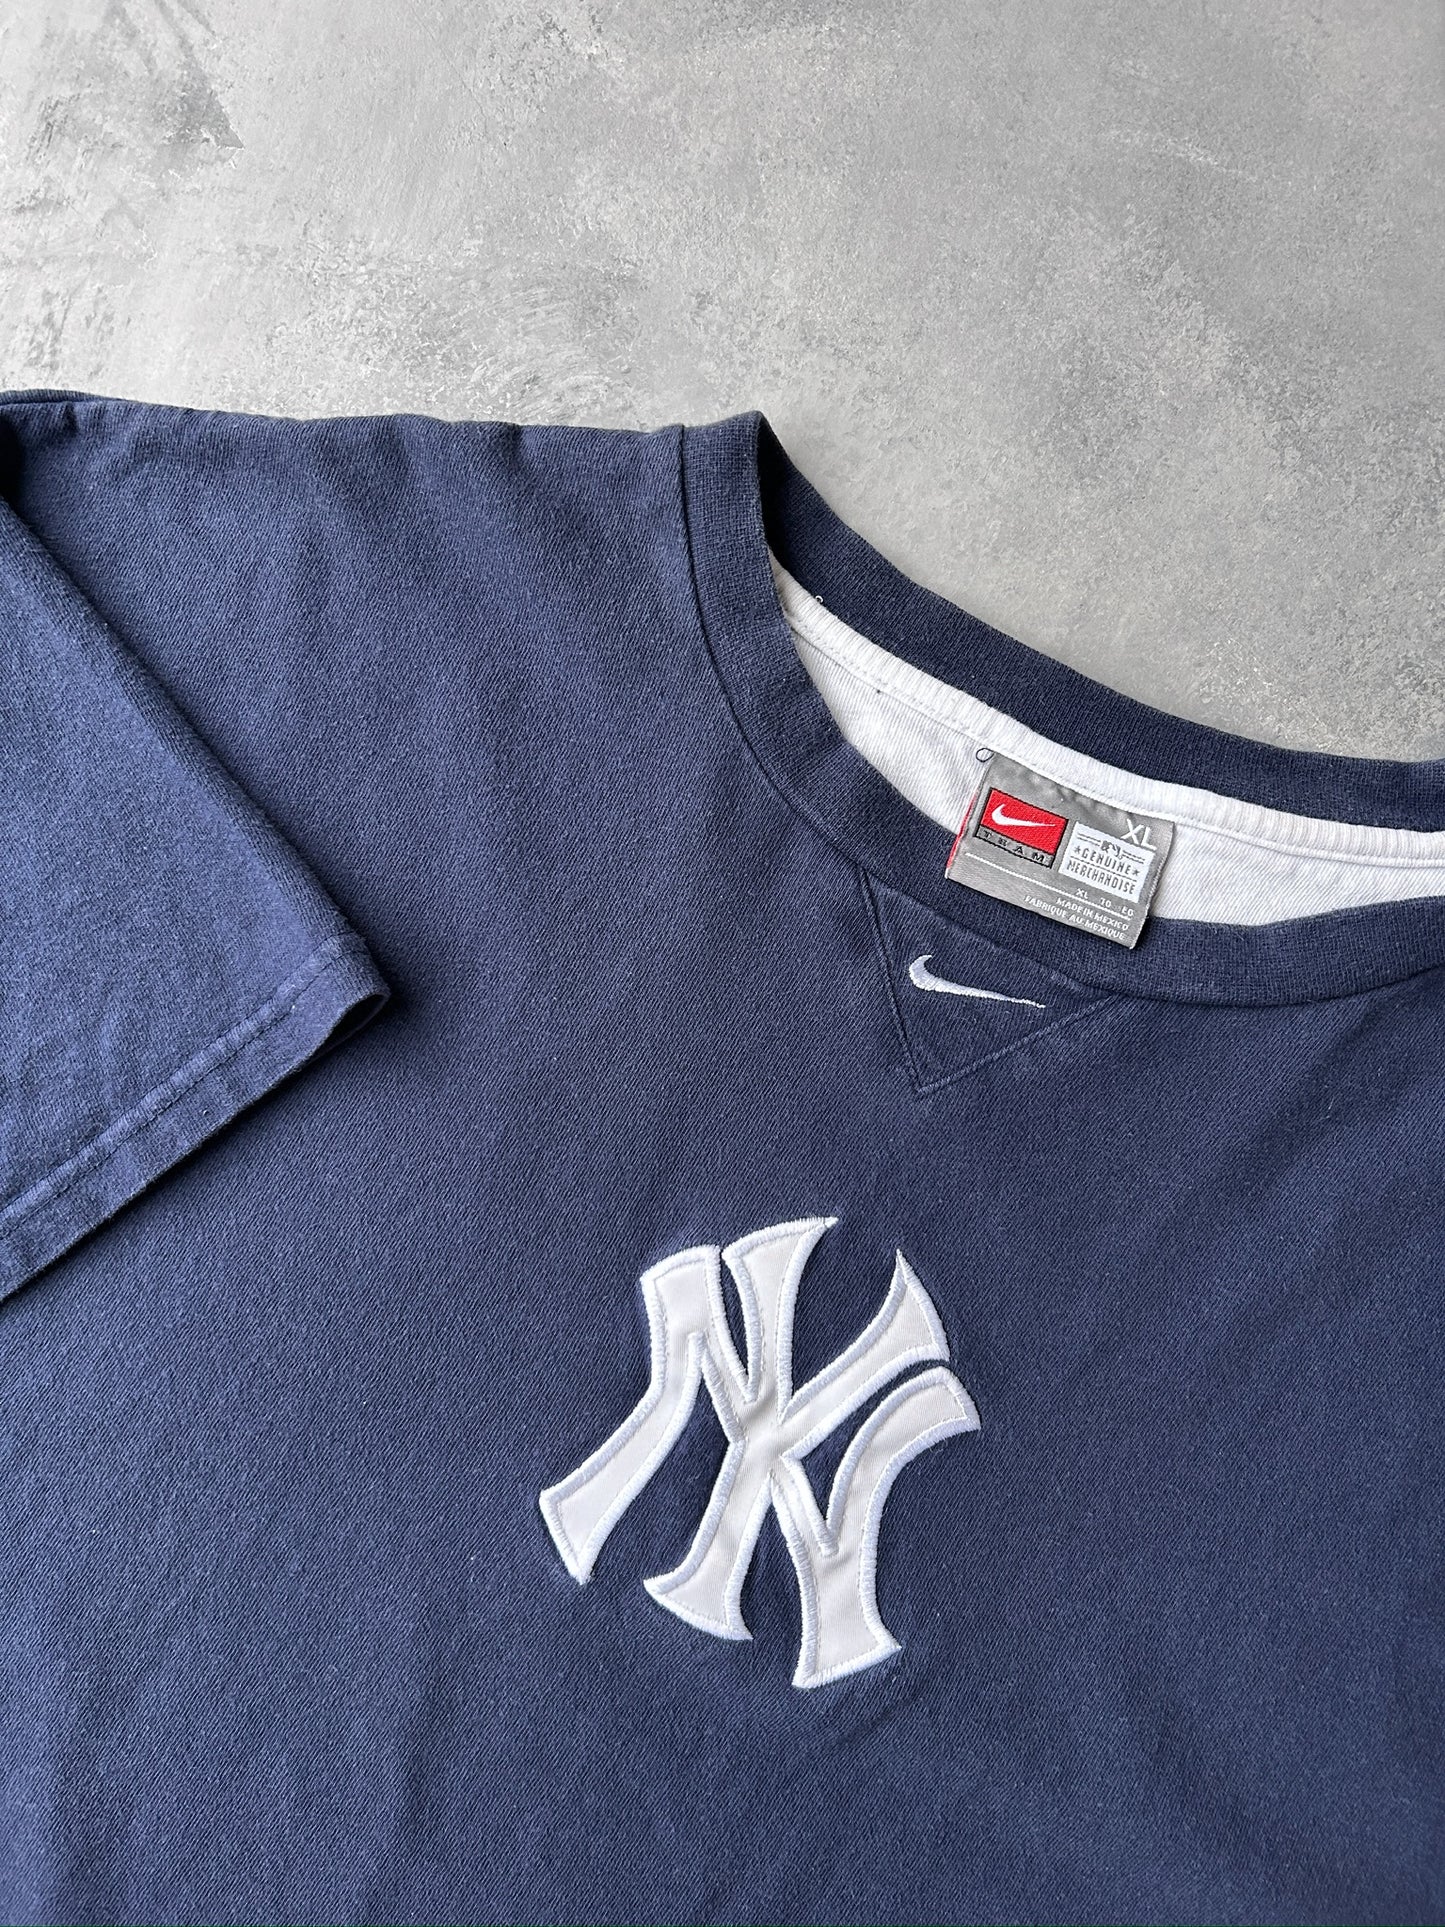 New York Yankees Nike T-Shirt 00's - XXL